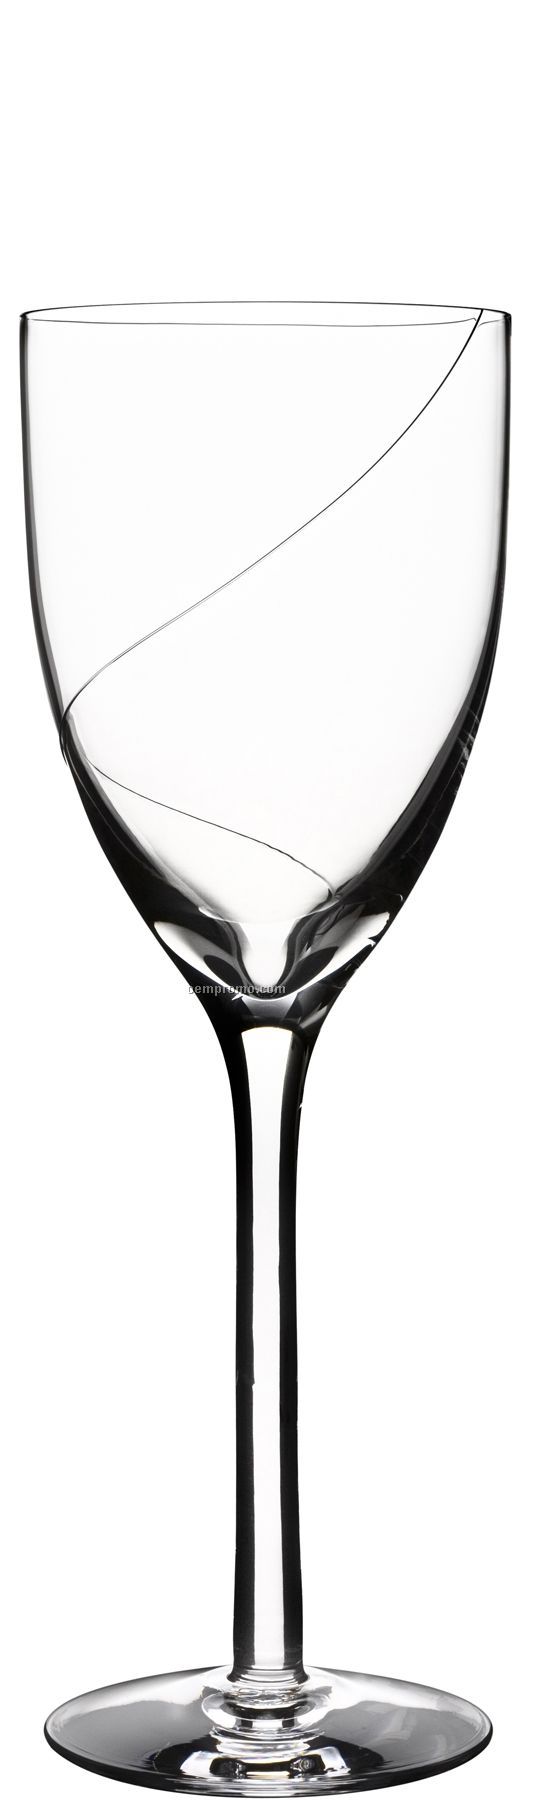 Line Glass Goblet Stemware W/ Swirl Design By Anna Ehrner